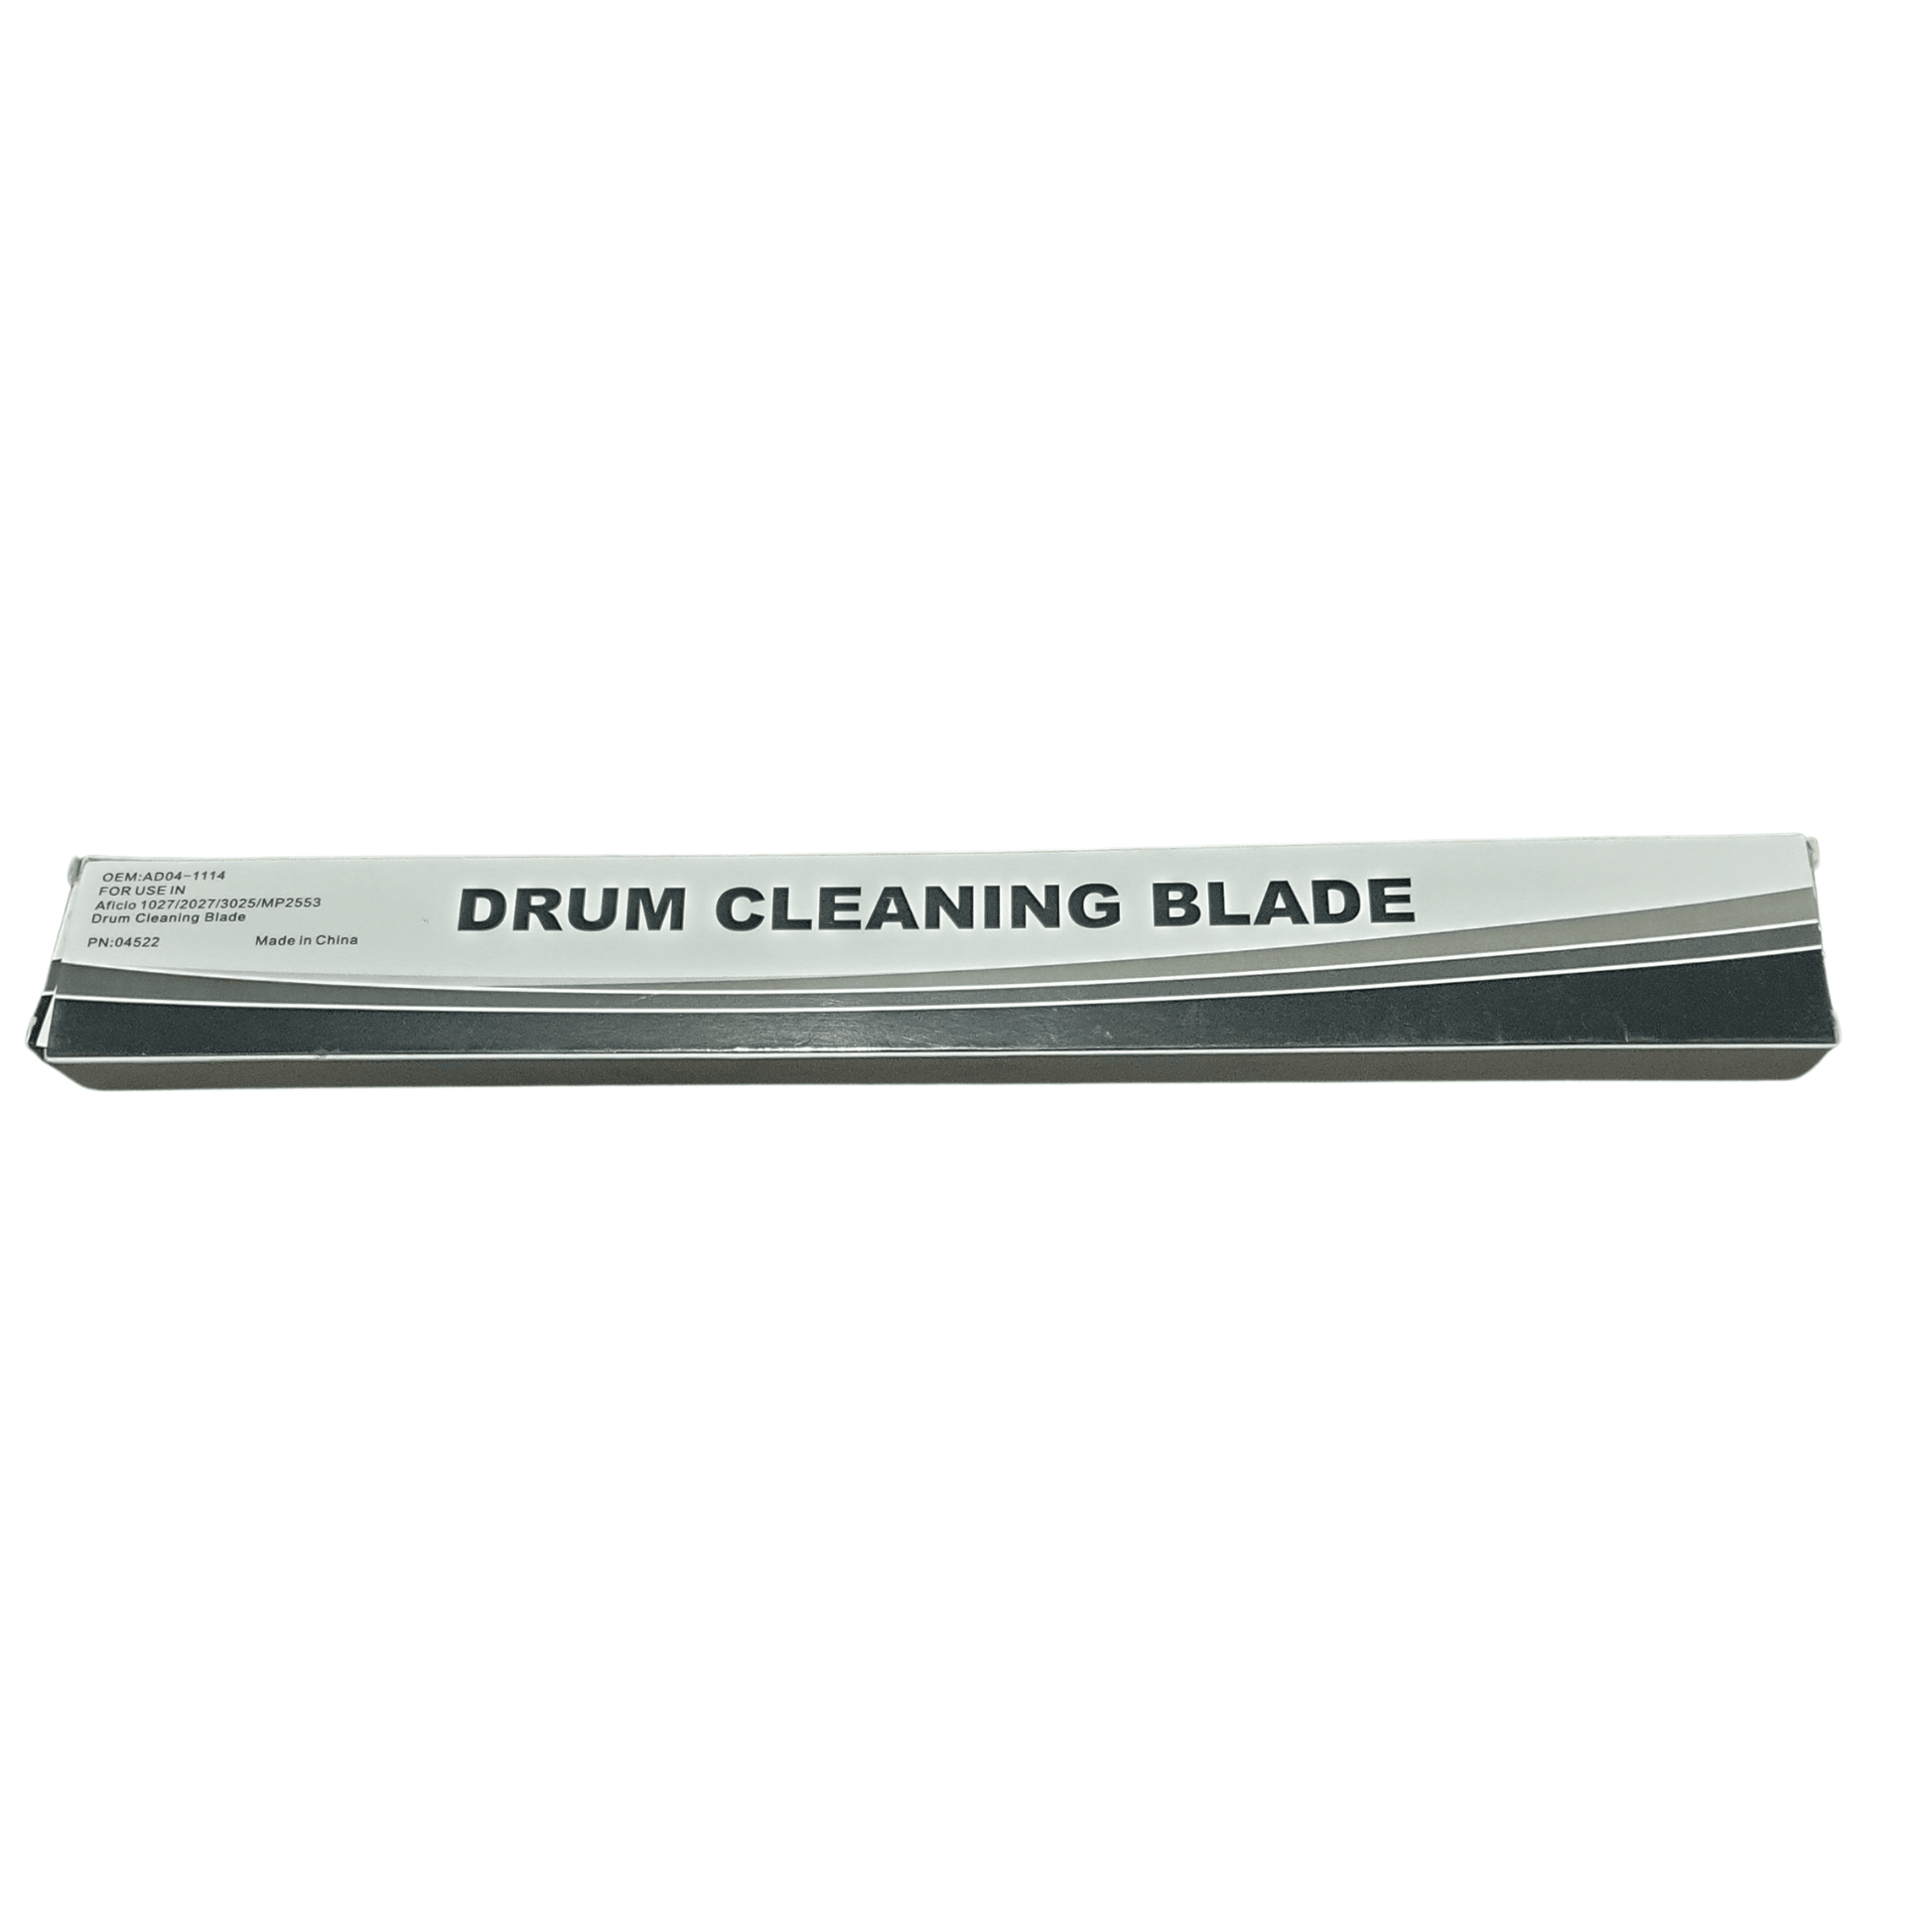 Cleaning blade Aficio 220/1022/MP2851 CET - 𝐏𝐑𝐄𝐌𝐈𝐄𝐑 𝐓𝐑𝐀𝐃𝐄𝐑𝐒